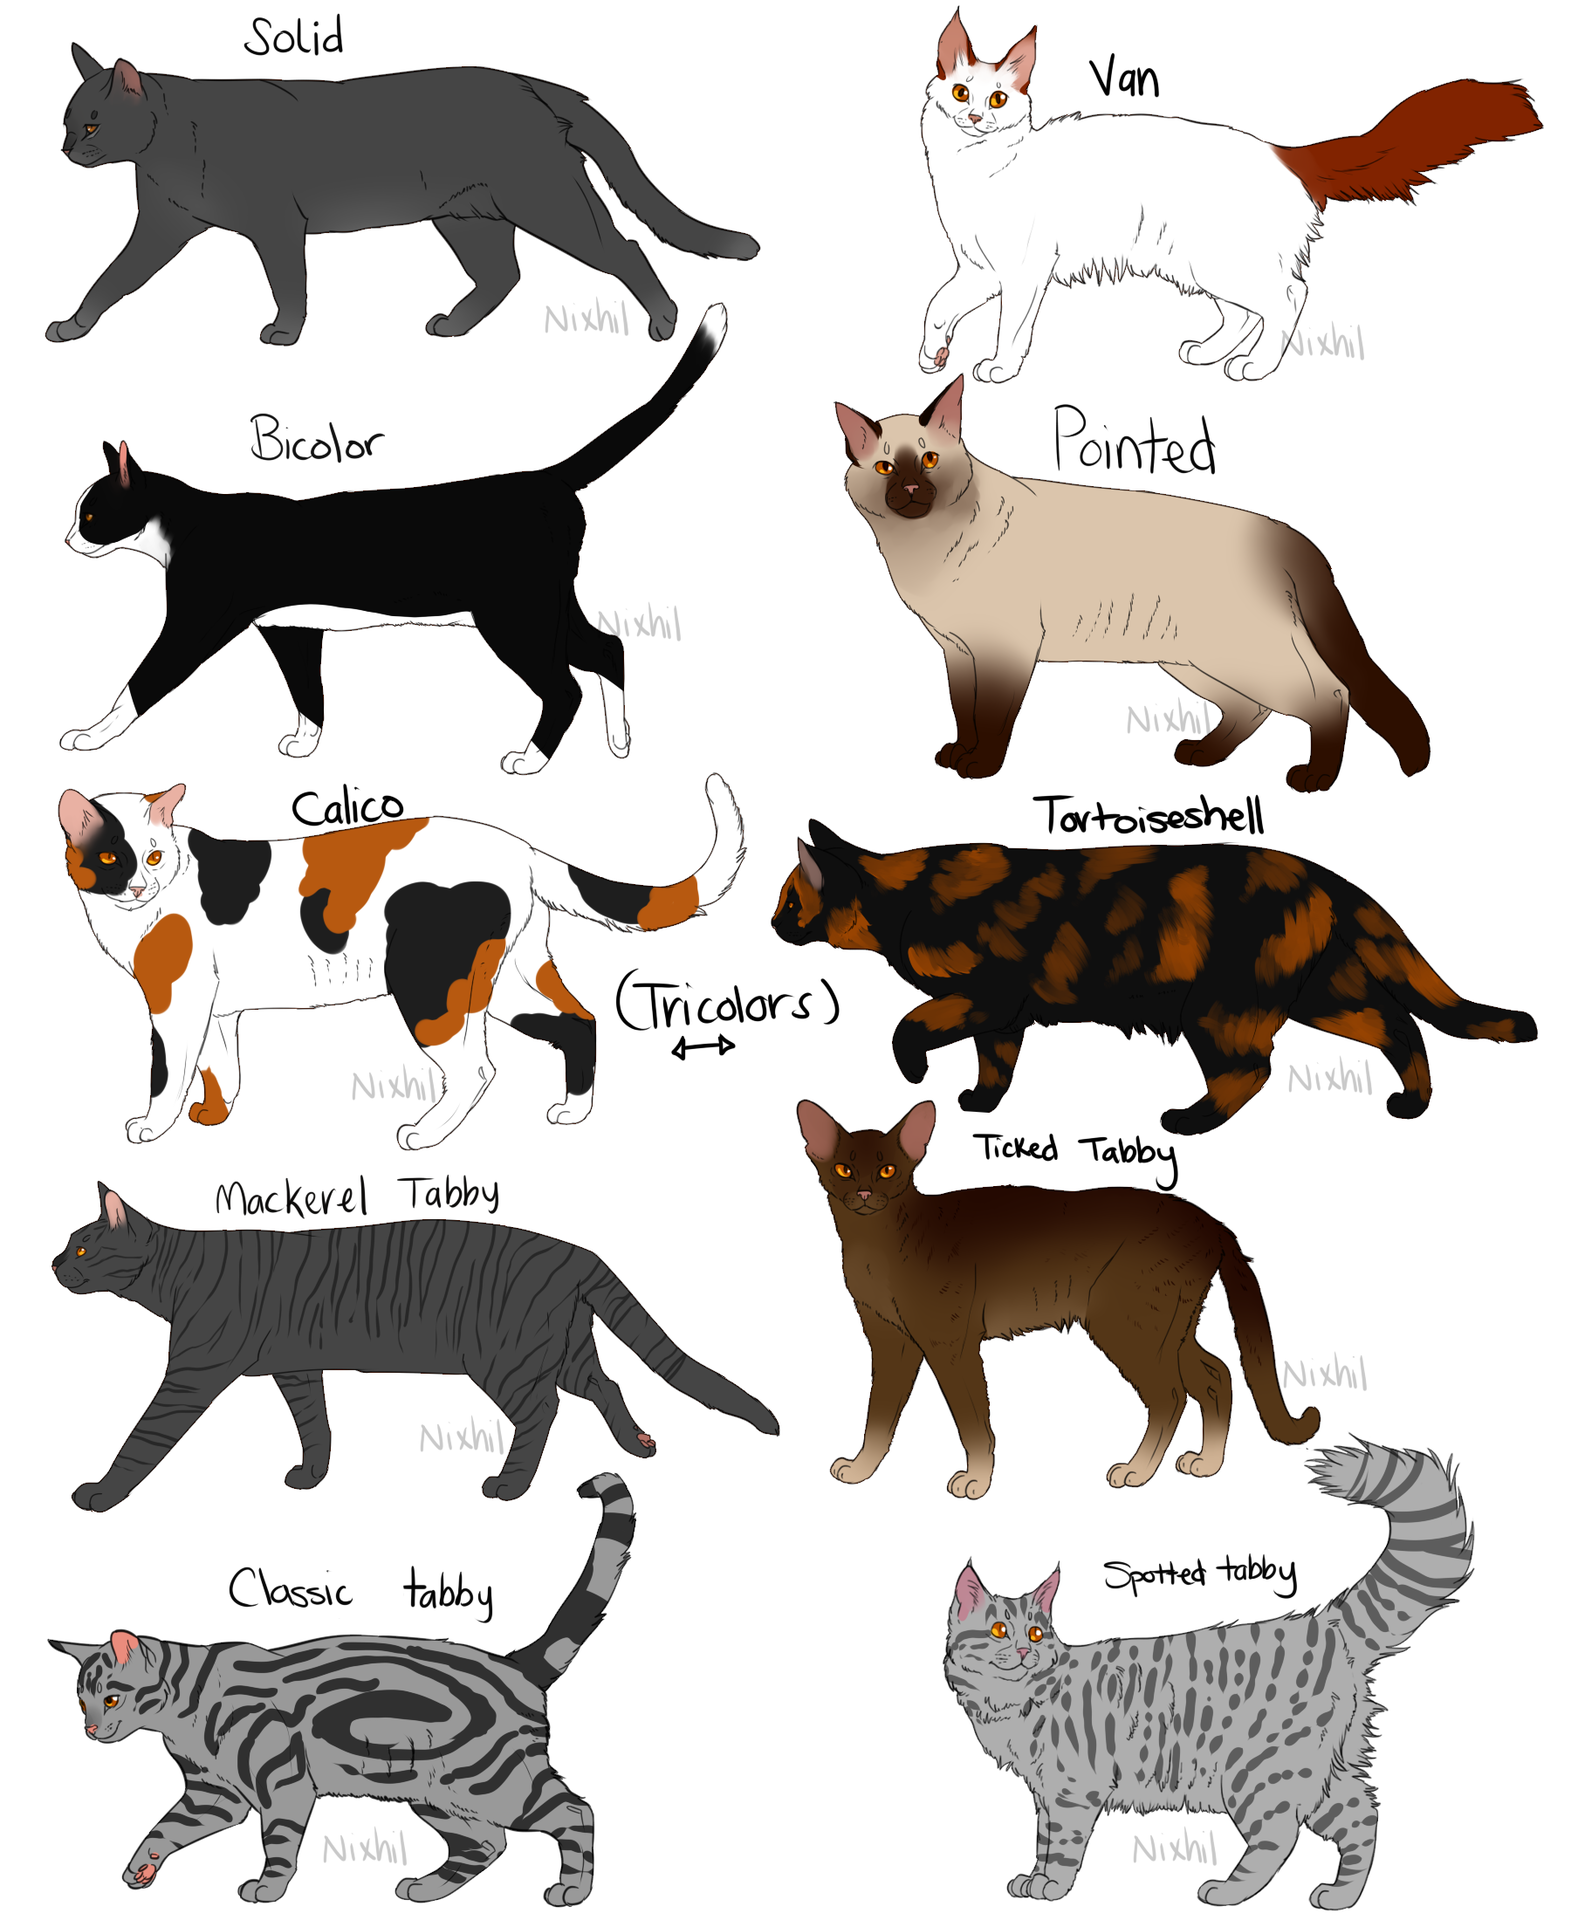 Особенности окраса табби у кошек – тигрового, классического и пятнистого: какие породы котов могут его иметь?